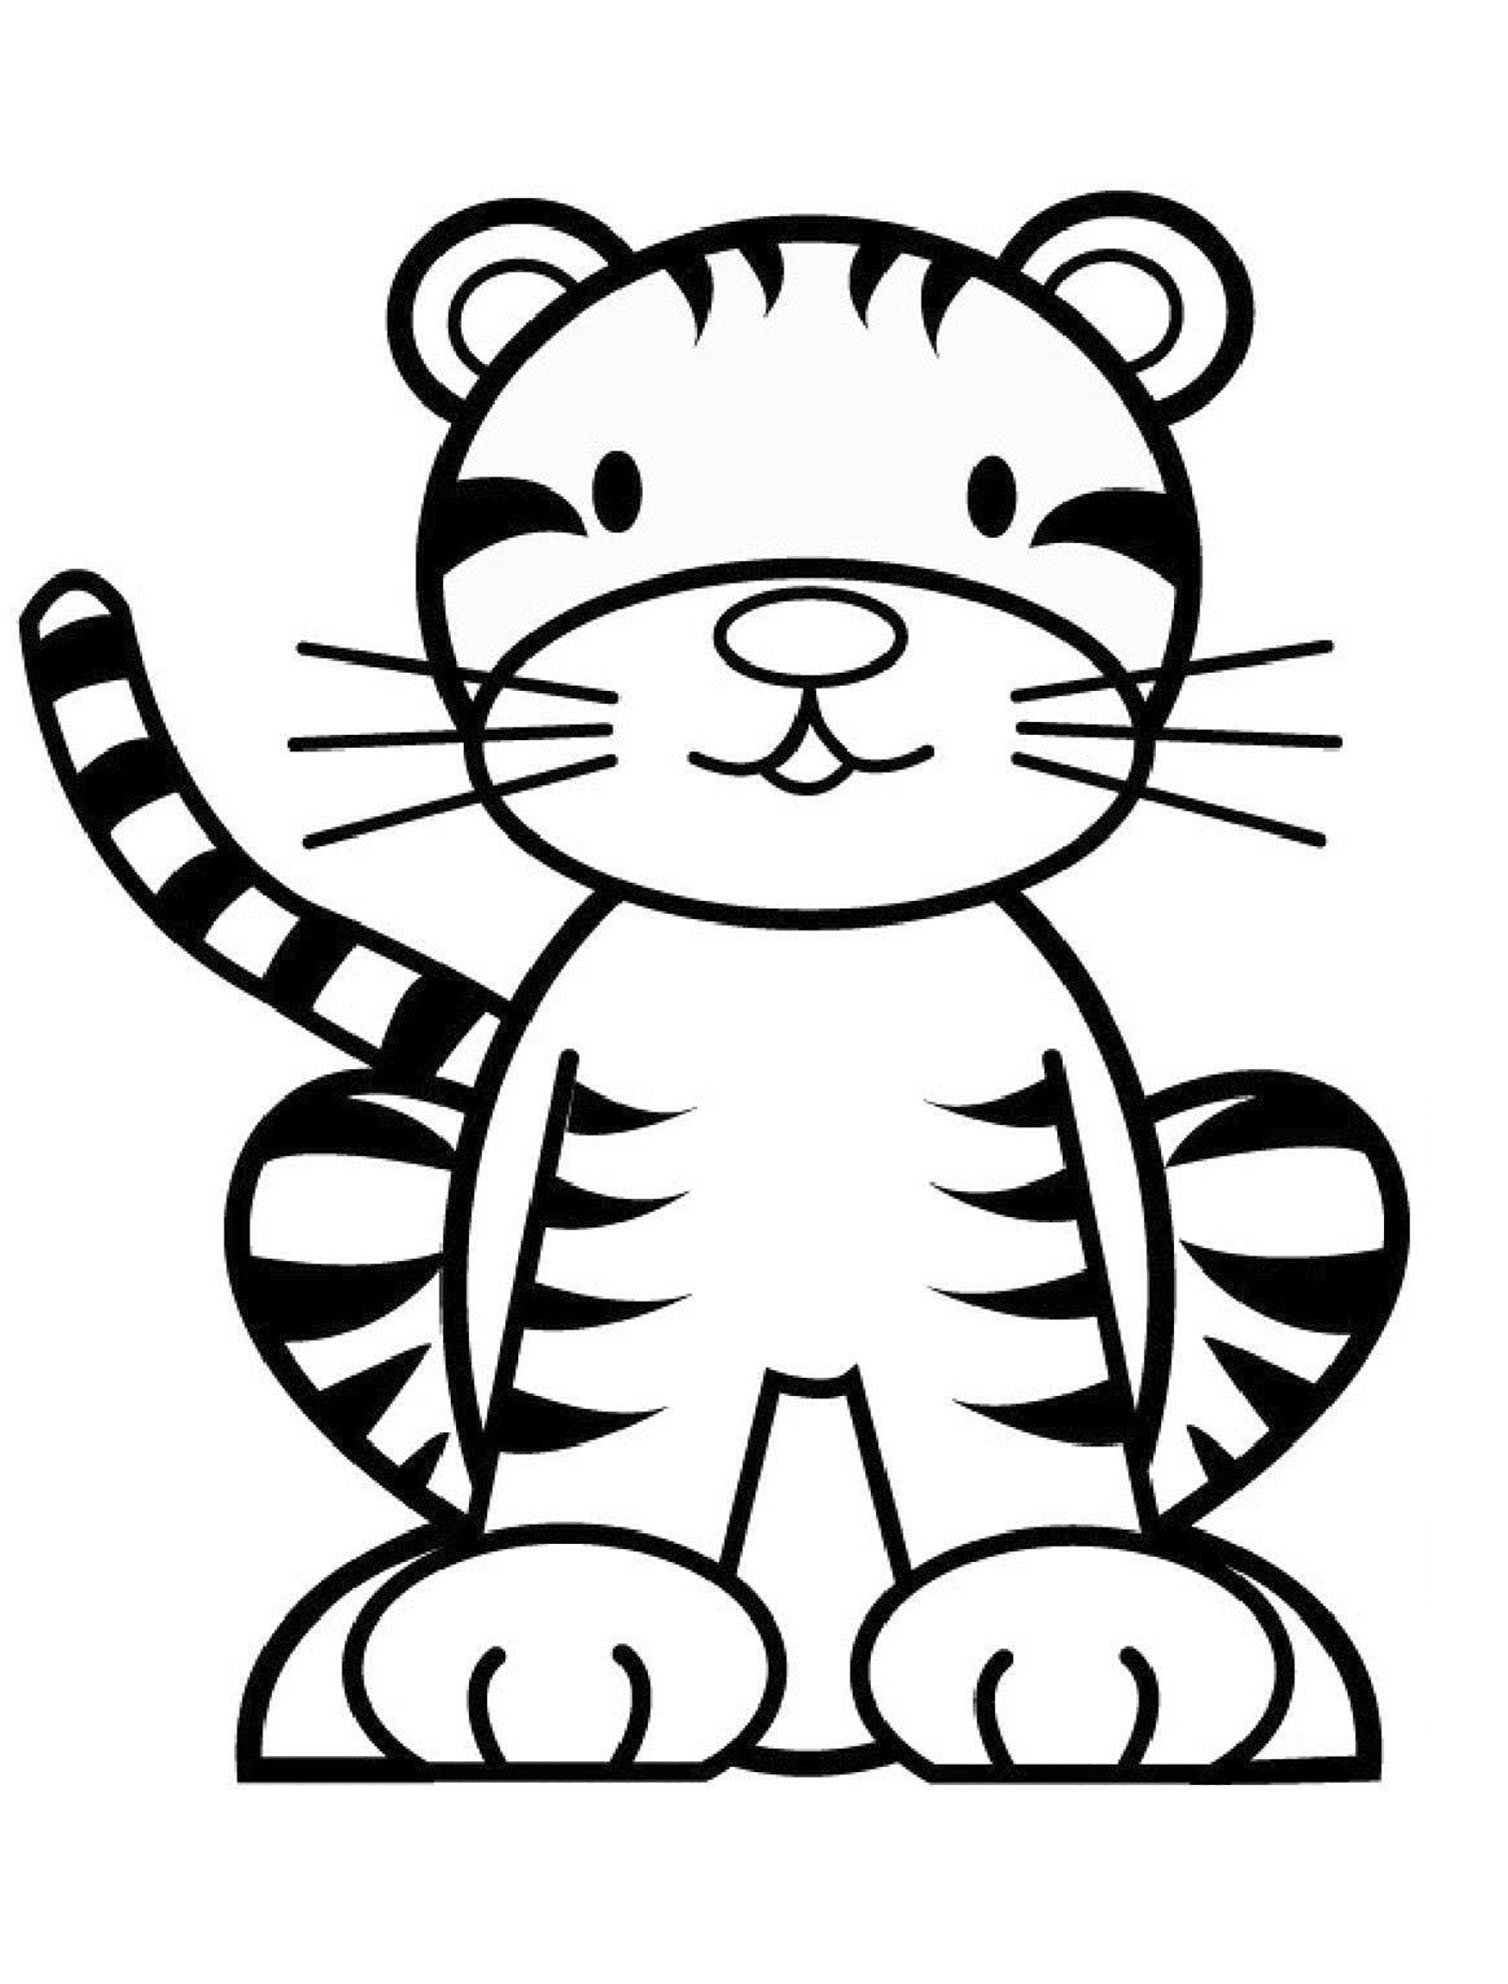 Тигр раскраска для детей